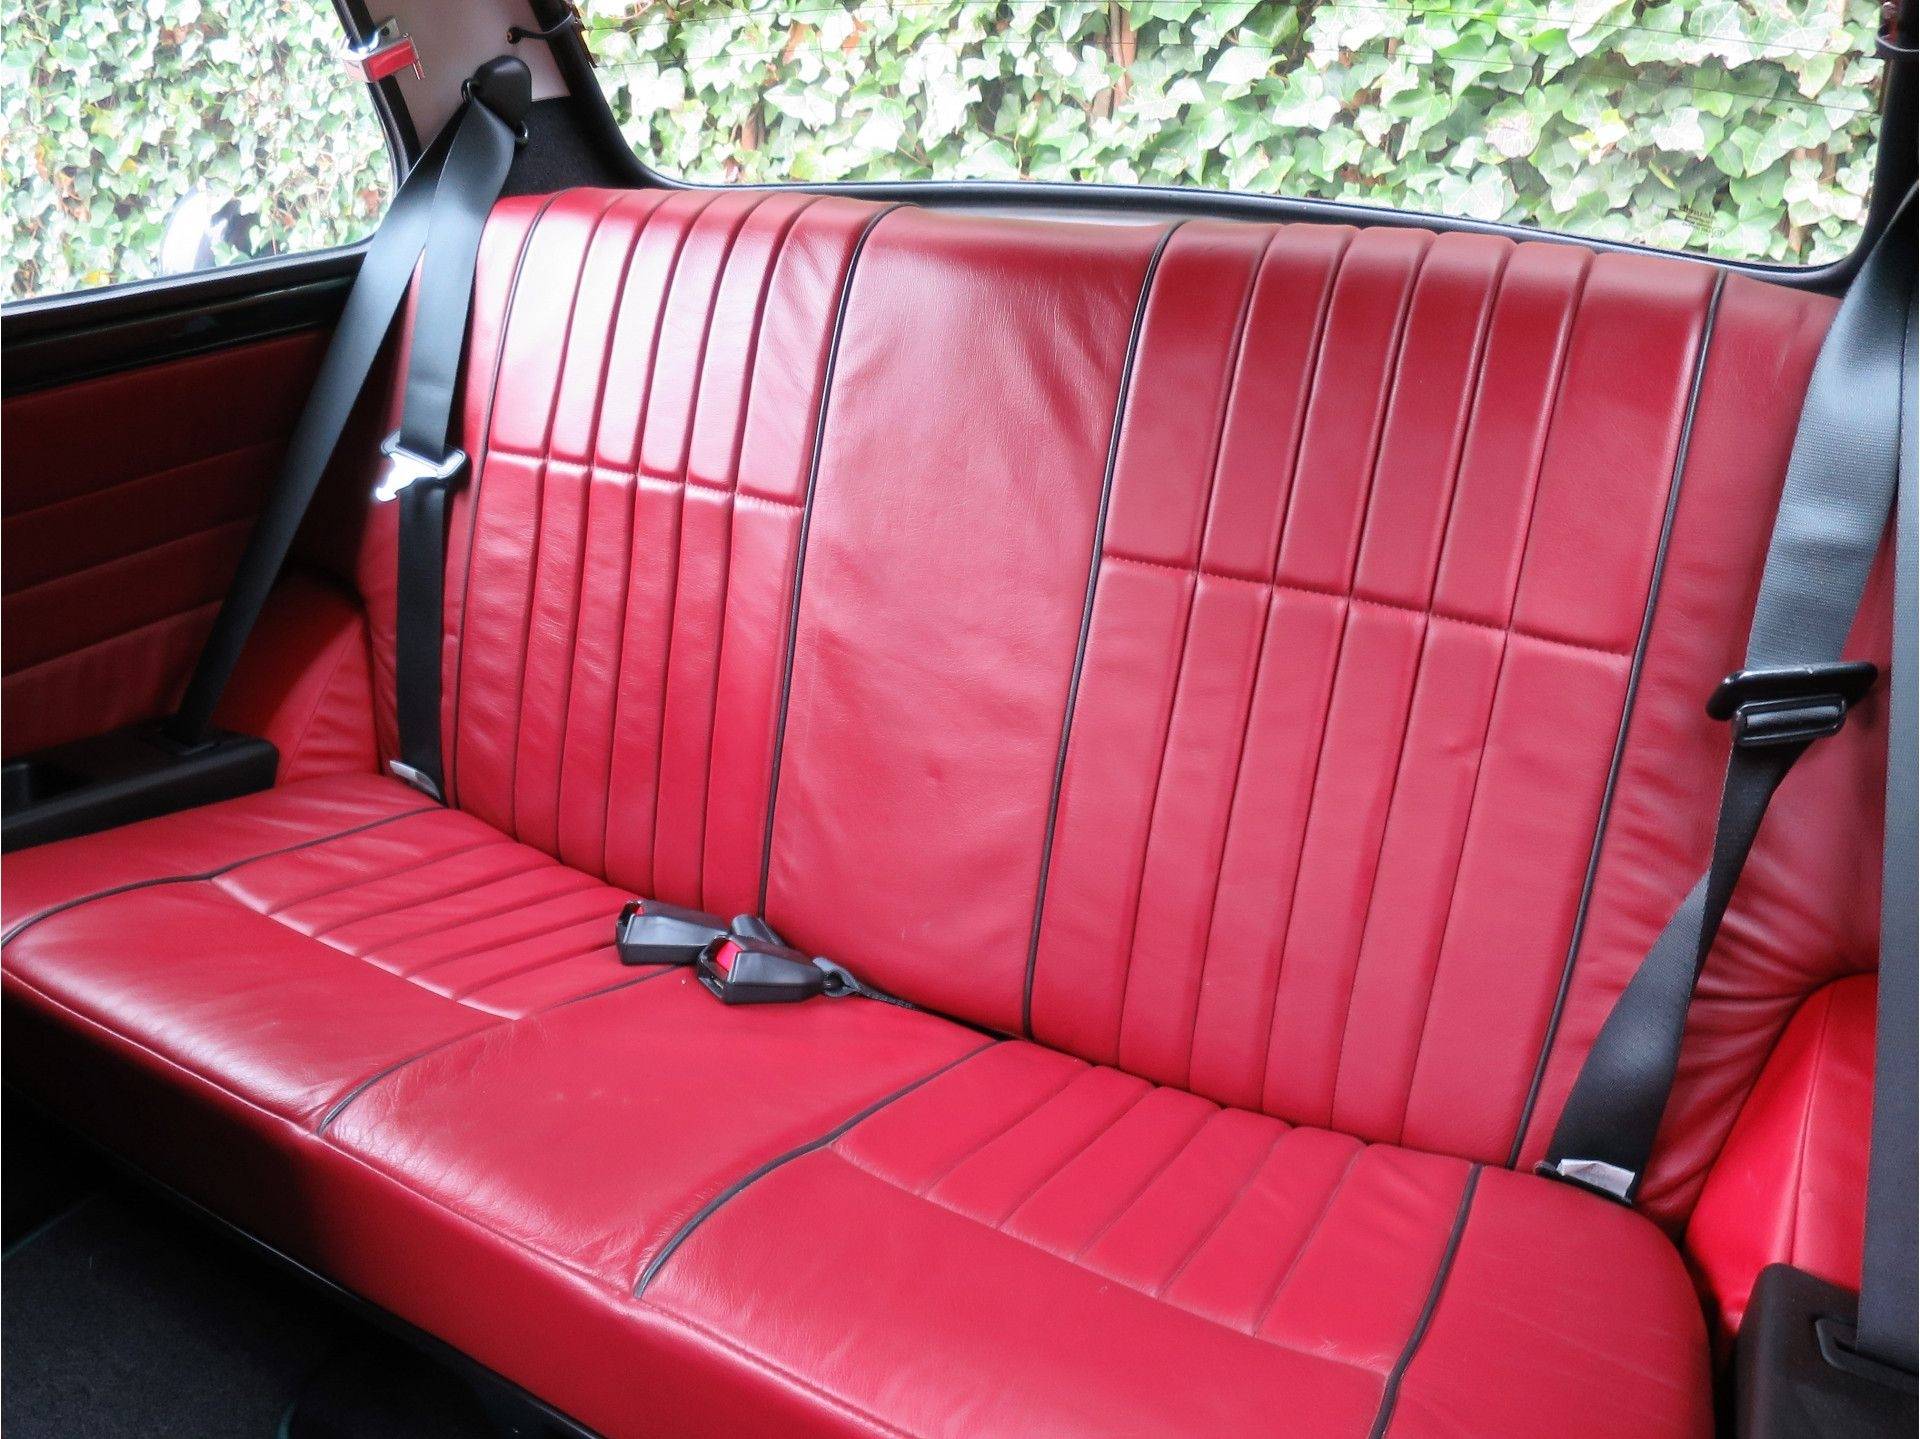 MINI Cooper Sport 1.3 MPI met leder interieur, houten dash en 13" velgen - 11/50